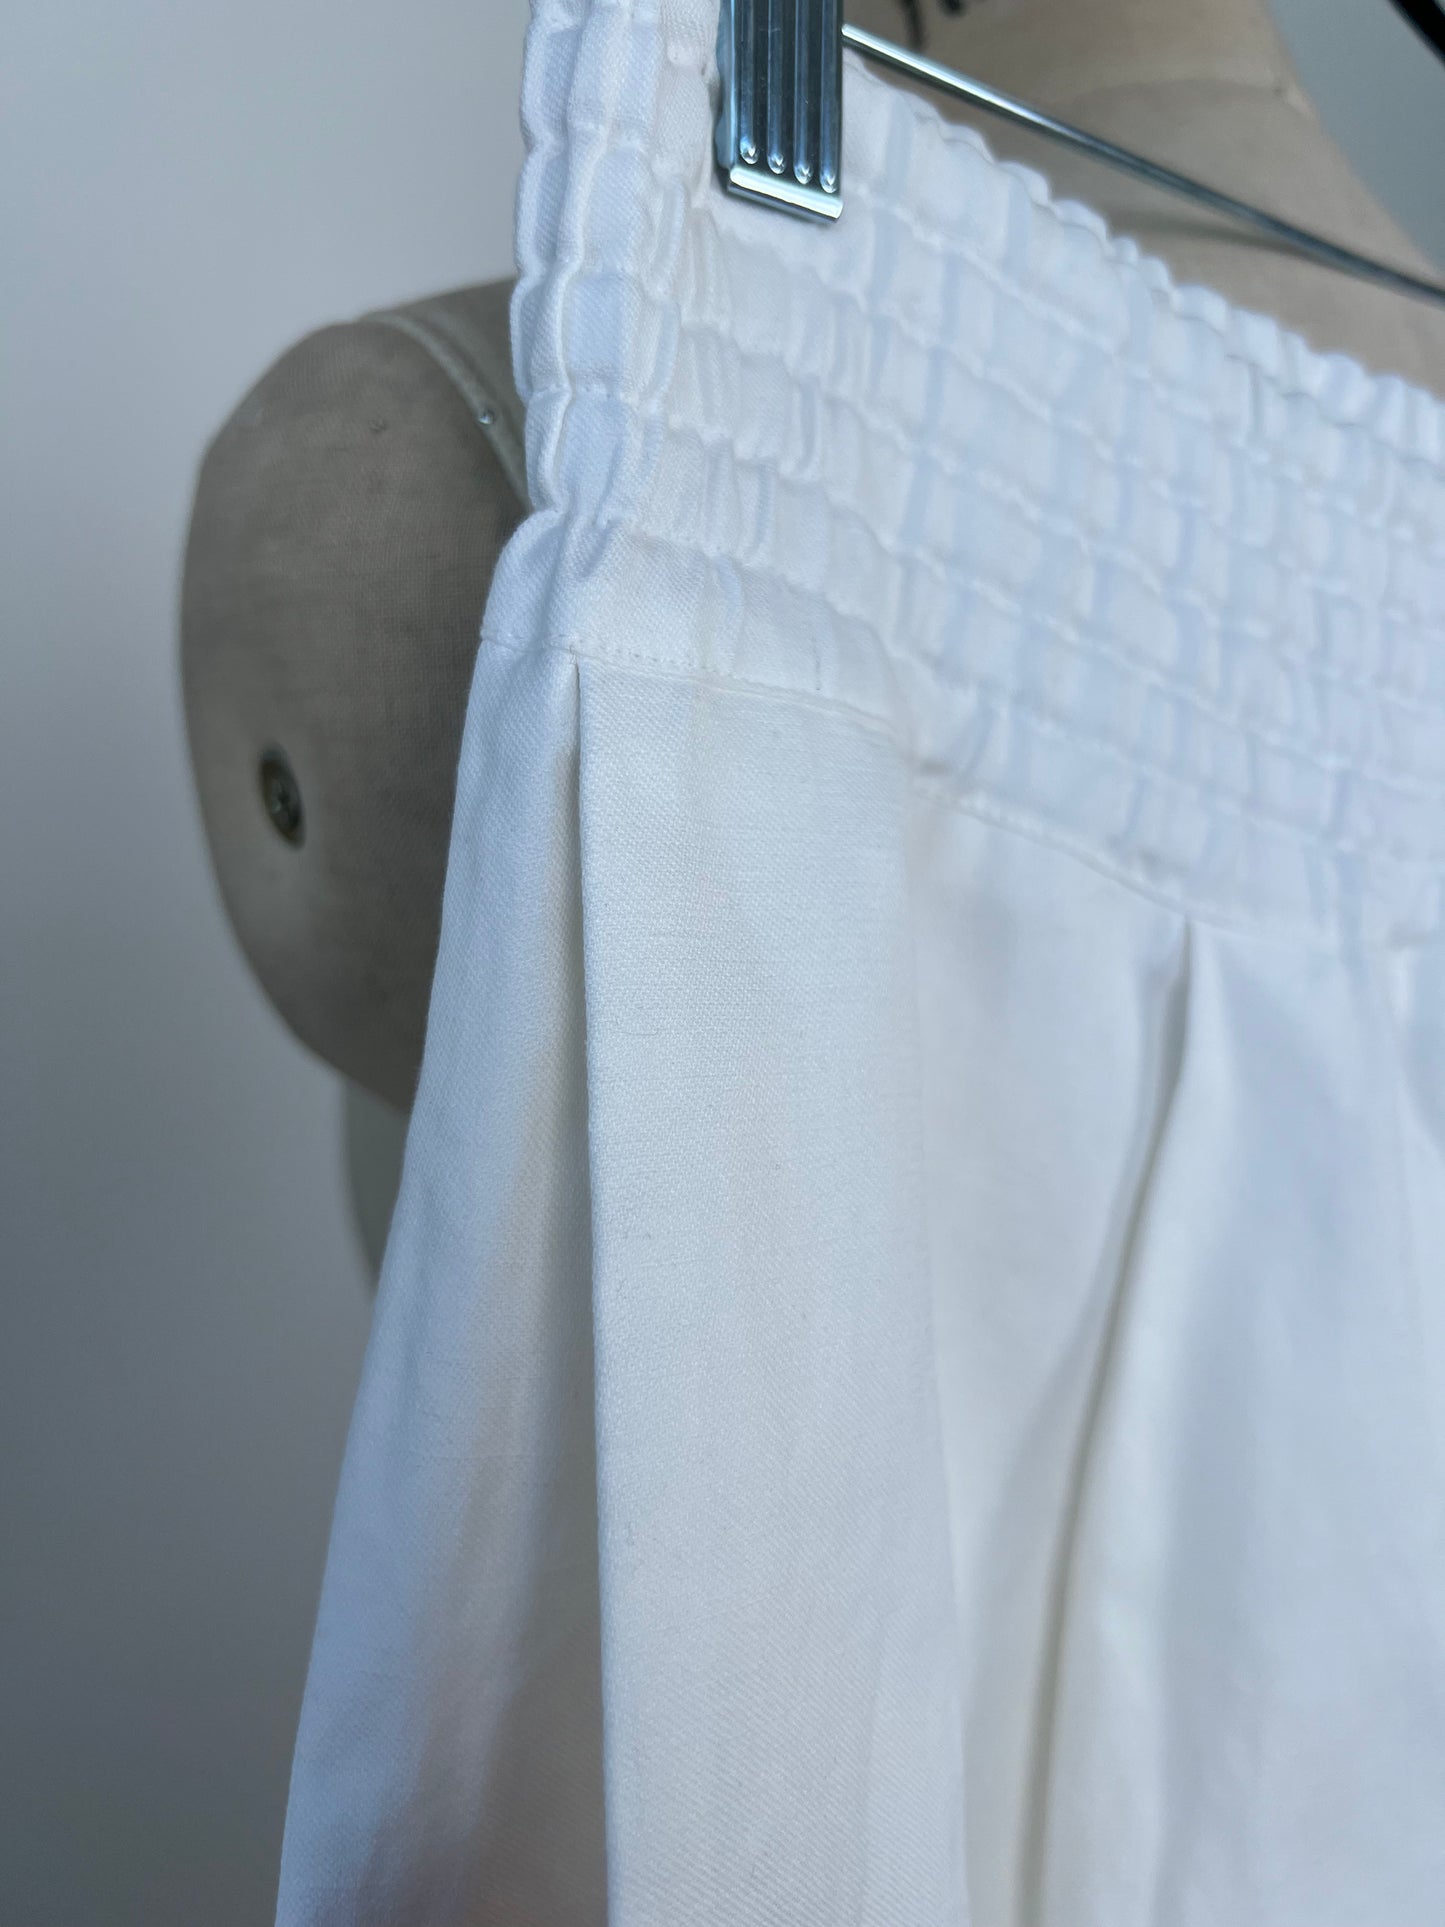 Pantalon blanc mou chic à taille élastique (L/XL)